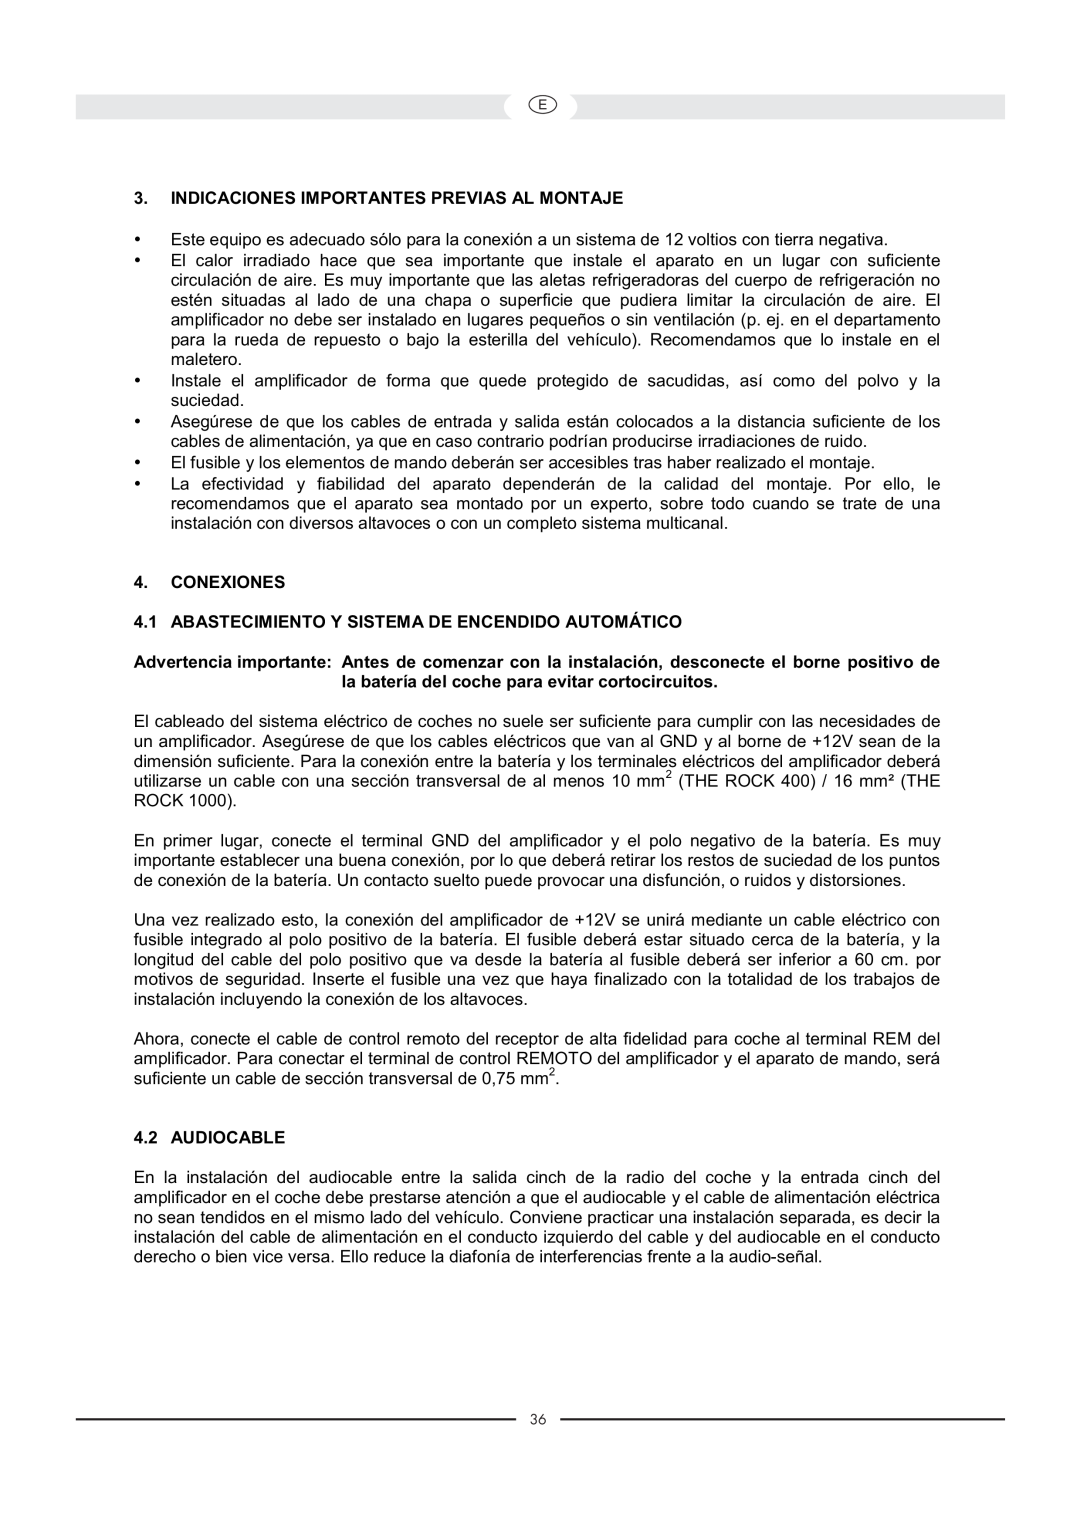 Magnat Audio 400 / 1000 owner manual Indicaciones Importantes Previas Al Montaje, Conexiones, Audiocable 